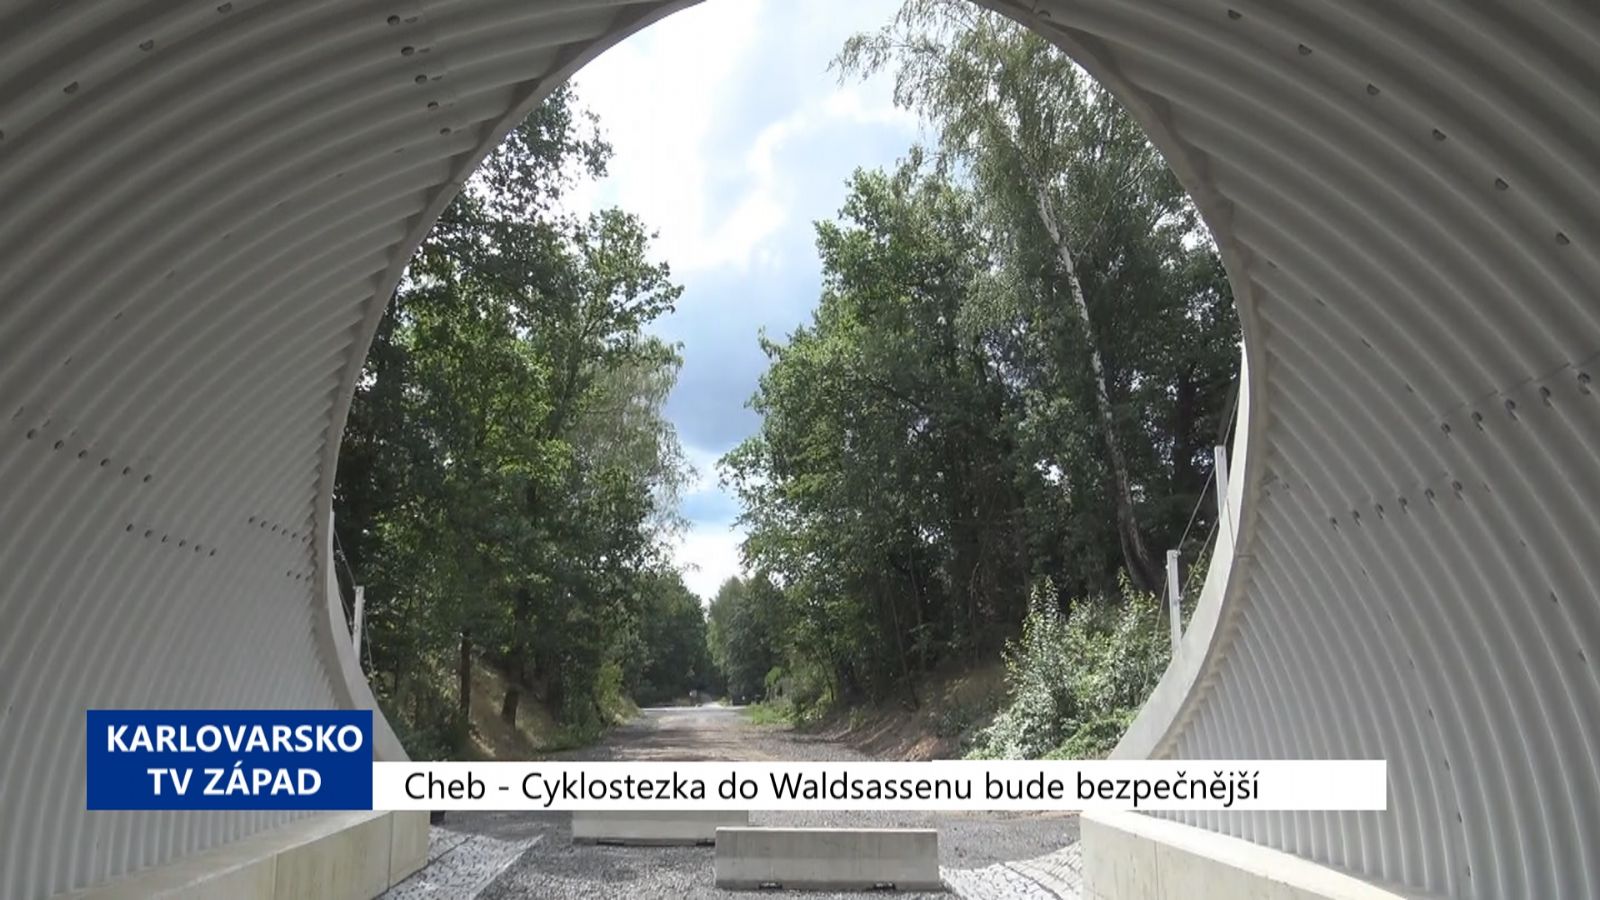 Cheb: Cyklostezka do Waldsassenu bude bezpečnější (TV Západ)